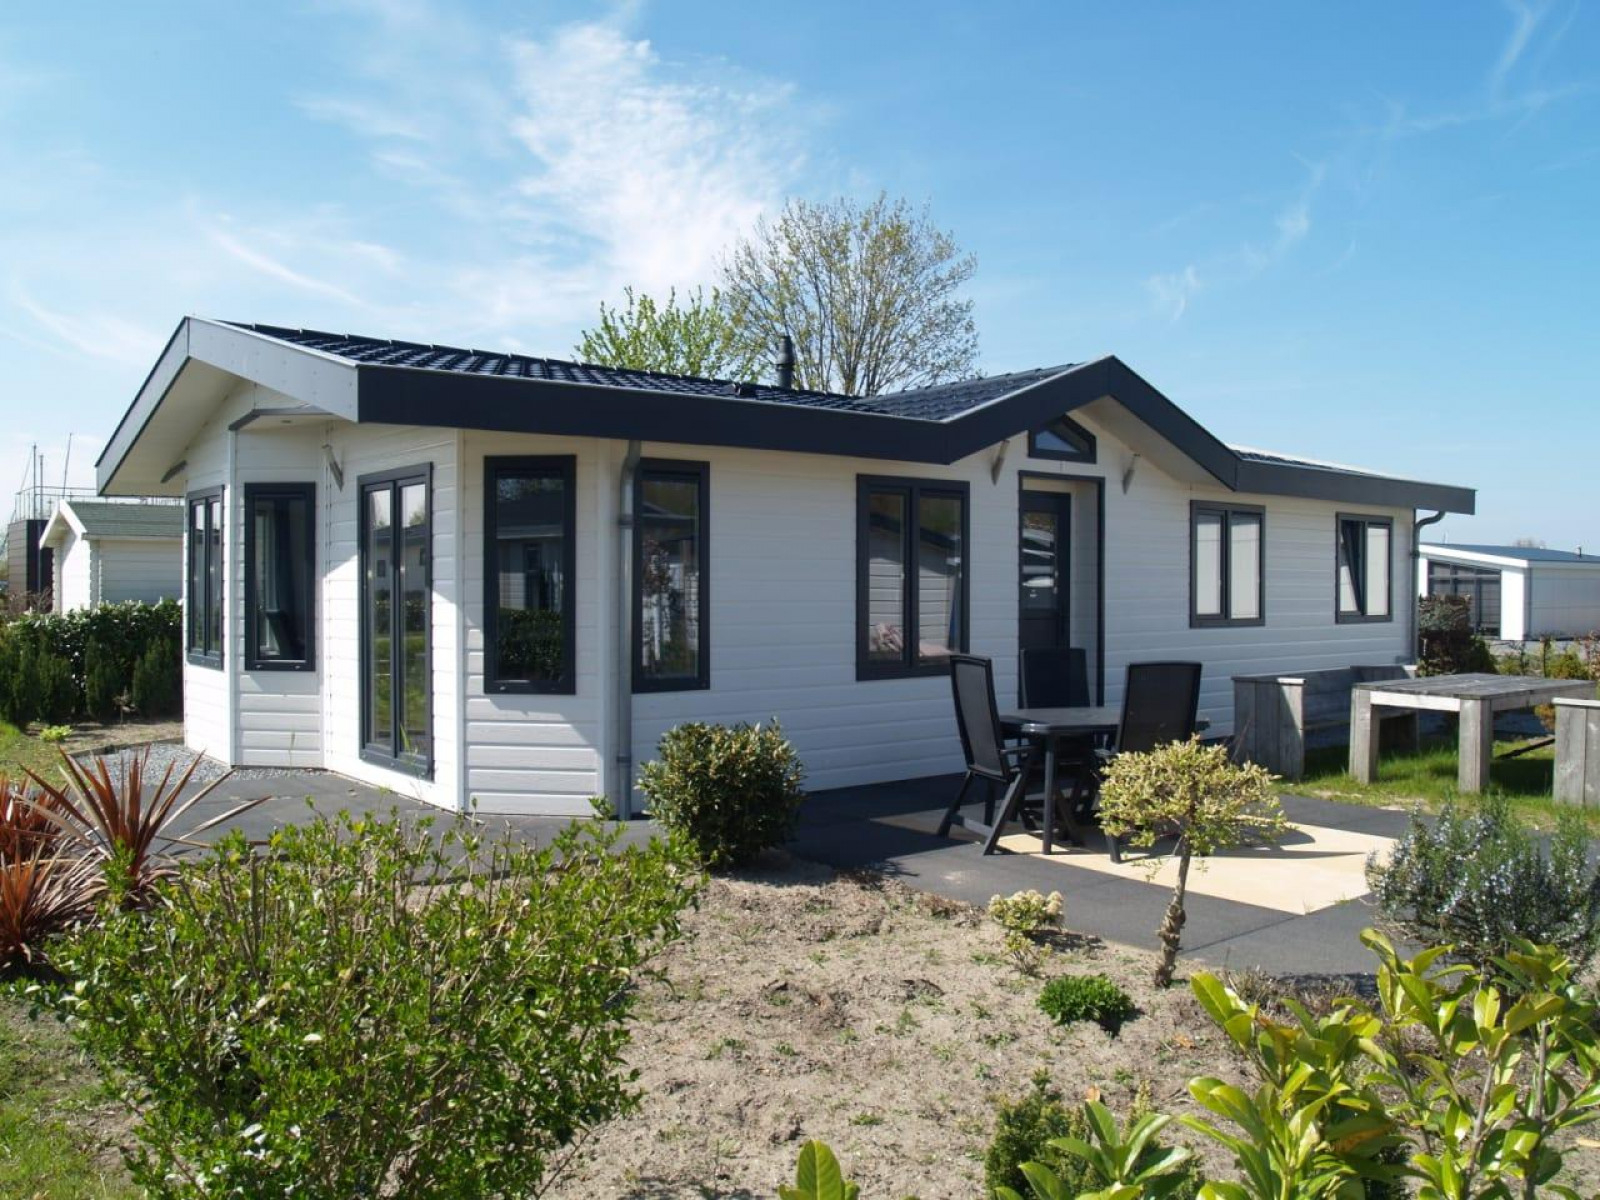 Luxe 6 persoons vakantiehuis op vakantiepark de Biesbosch. - Nederland - Europa - Dordrecht